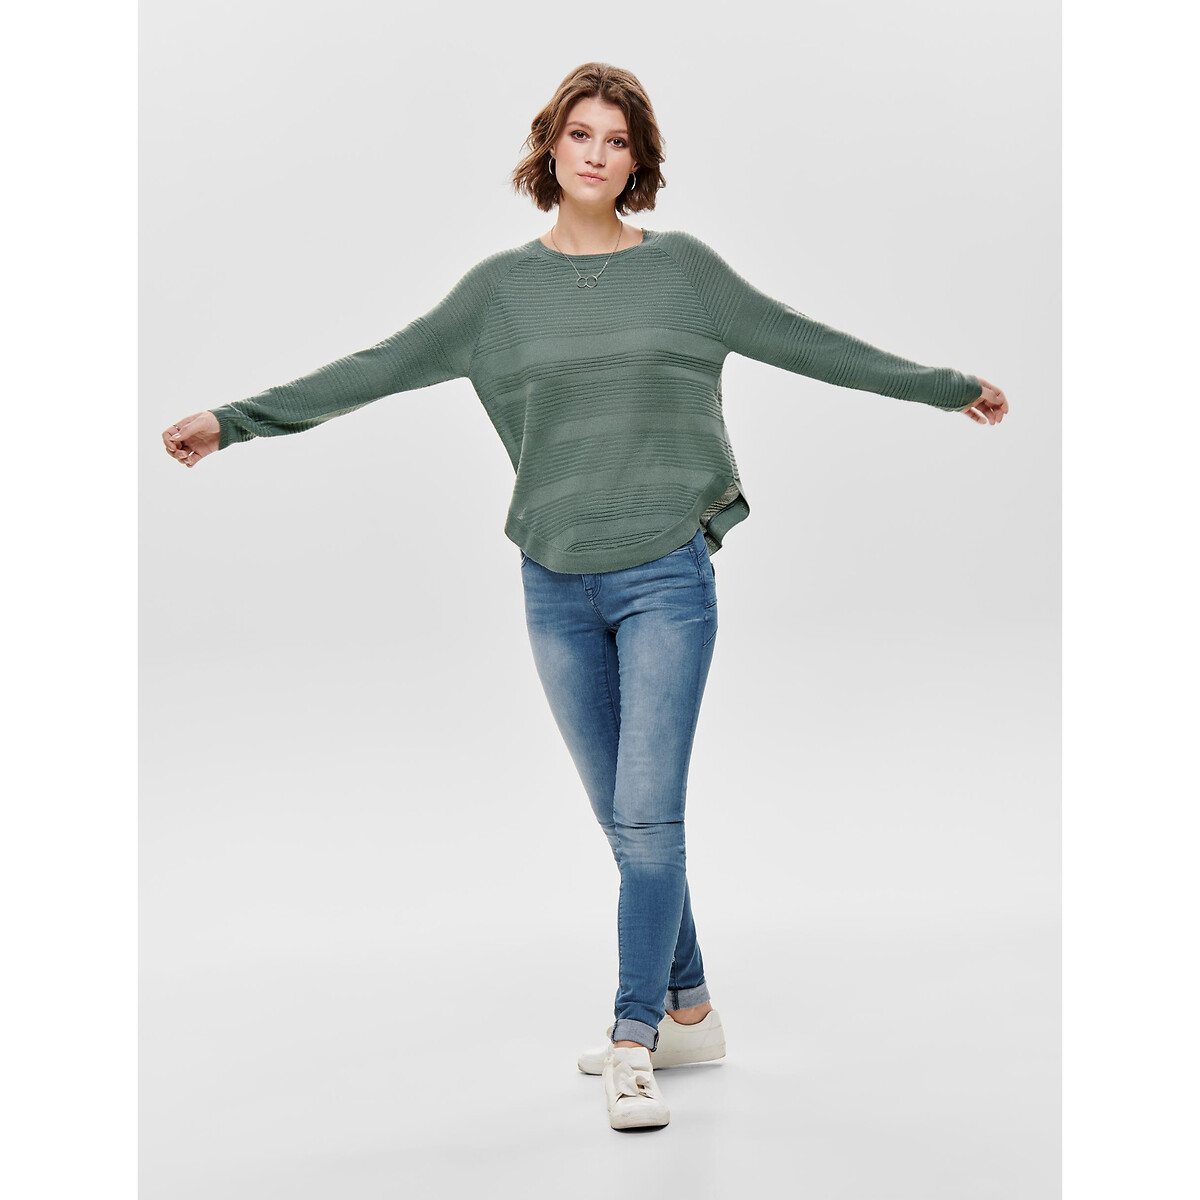 Пуловер Из тонкого трикотажа присборенный снизу S зеленый LaRedoute, размер S - фото 3